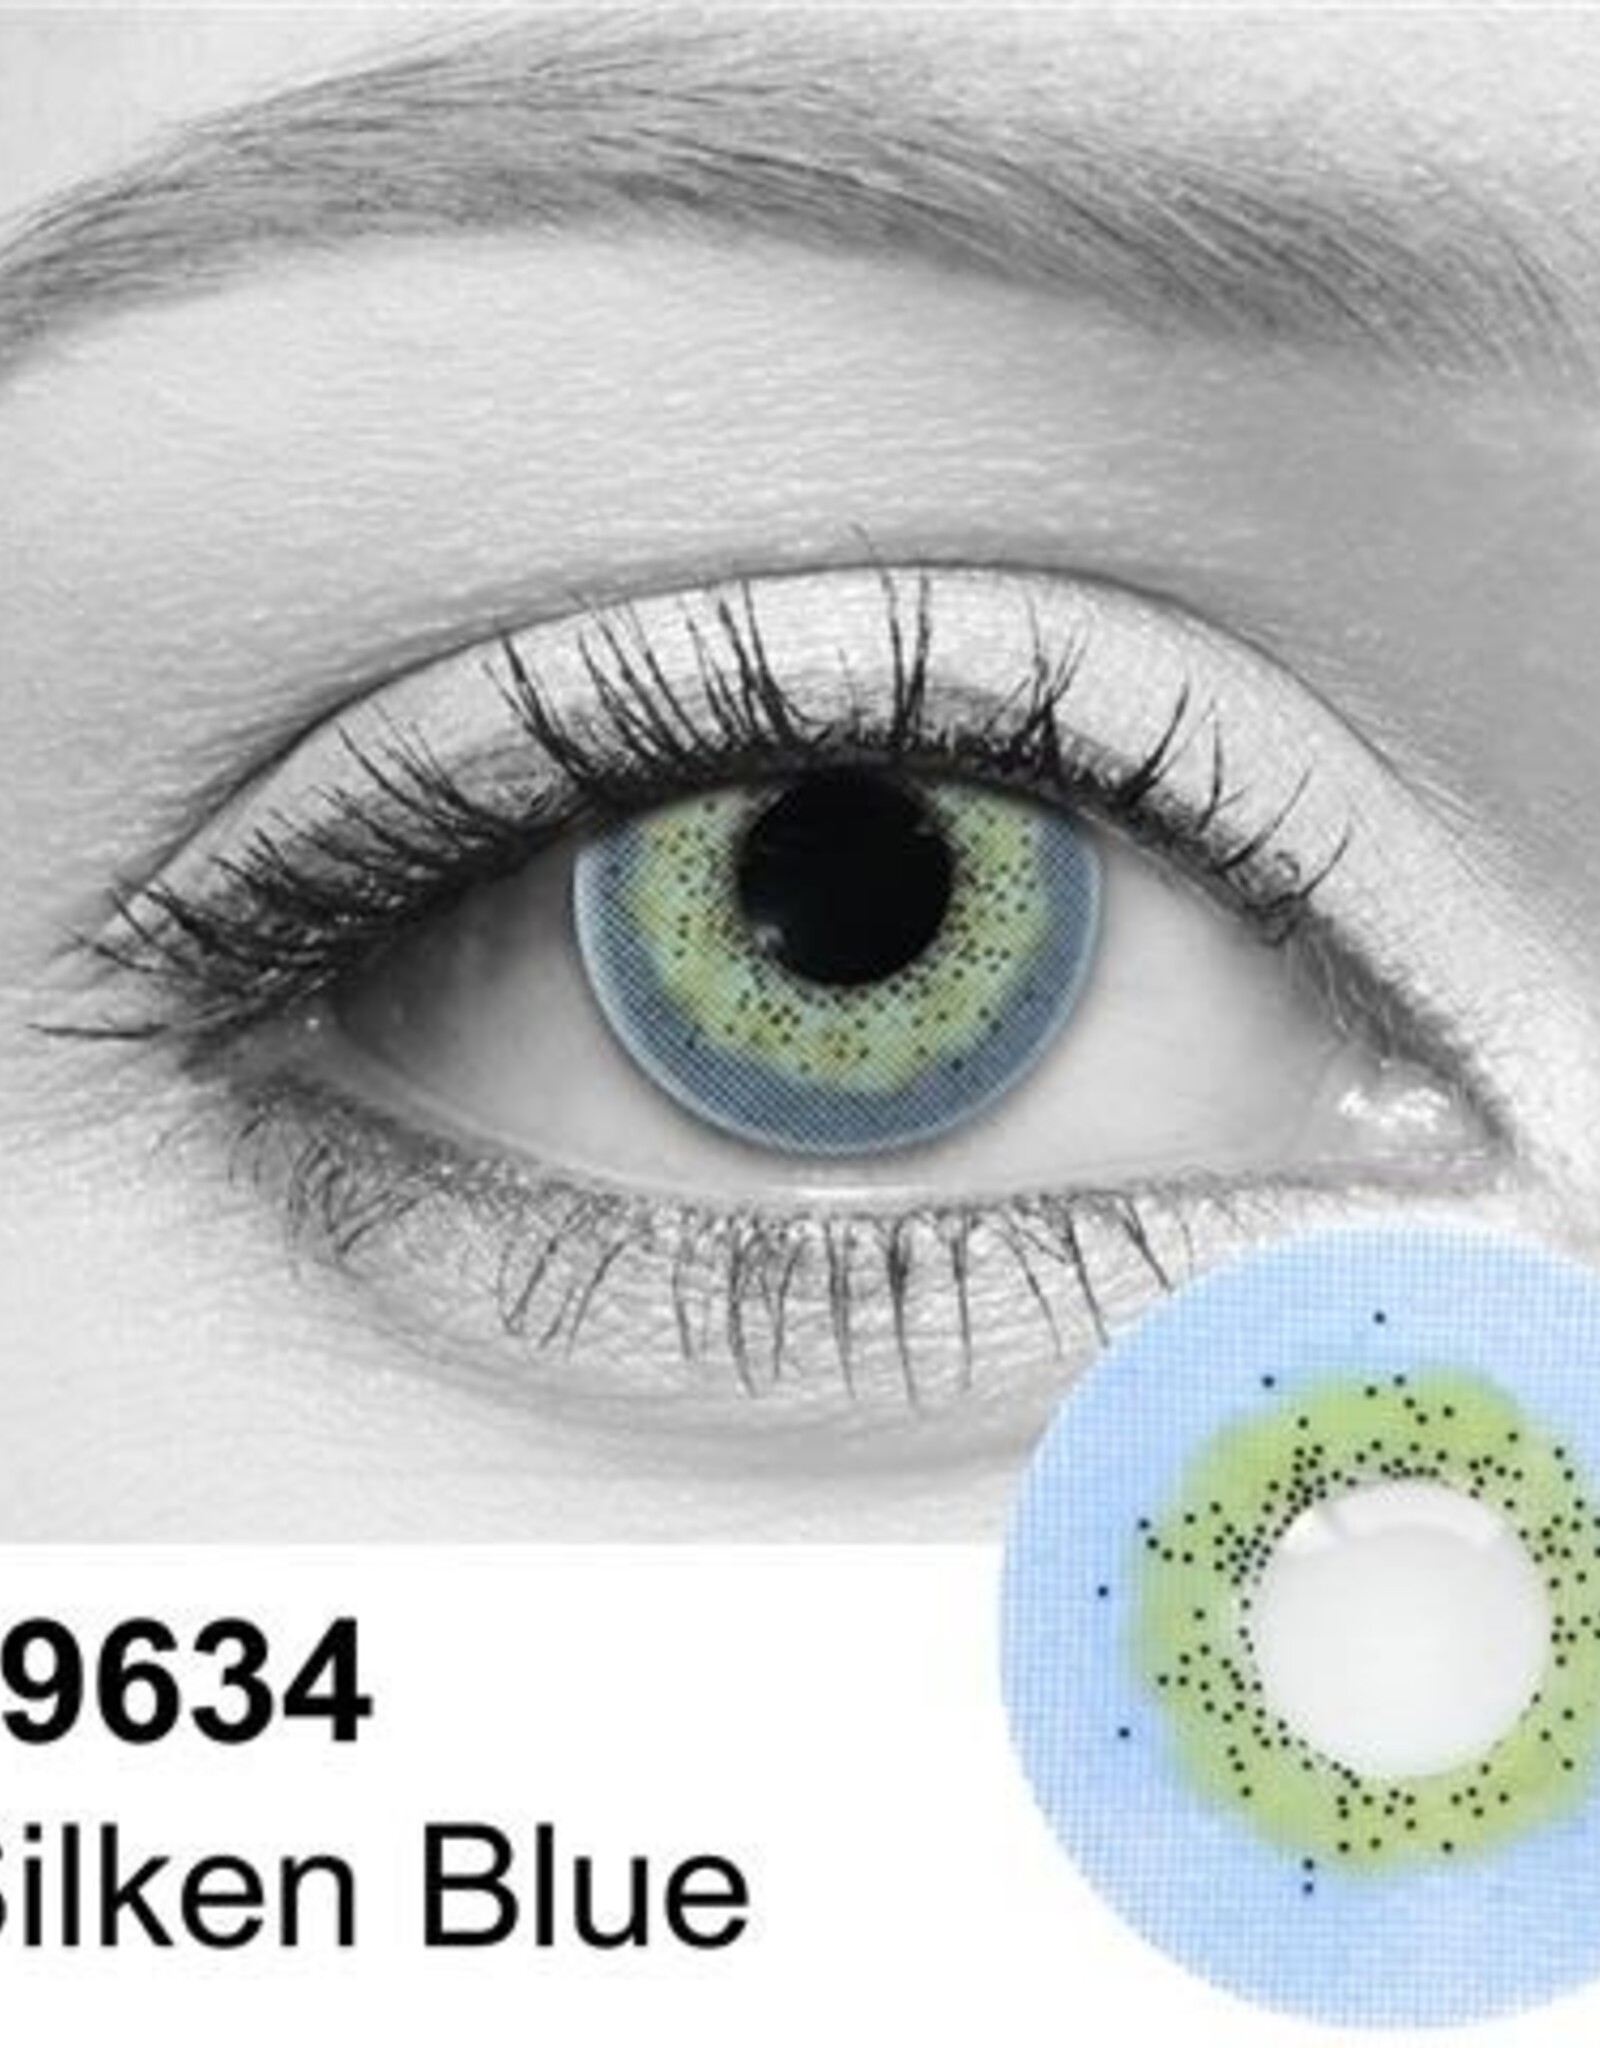 Silken Blue Contact Lens